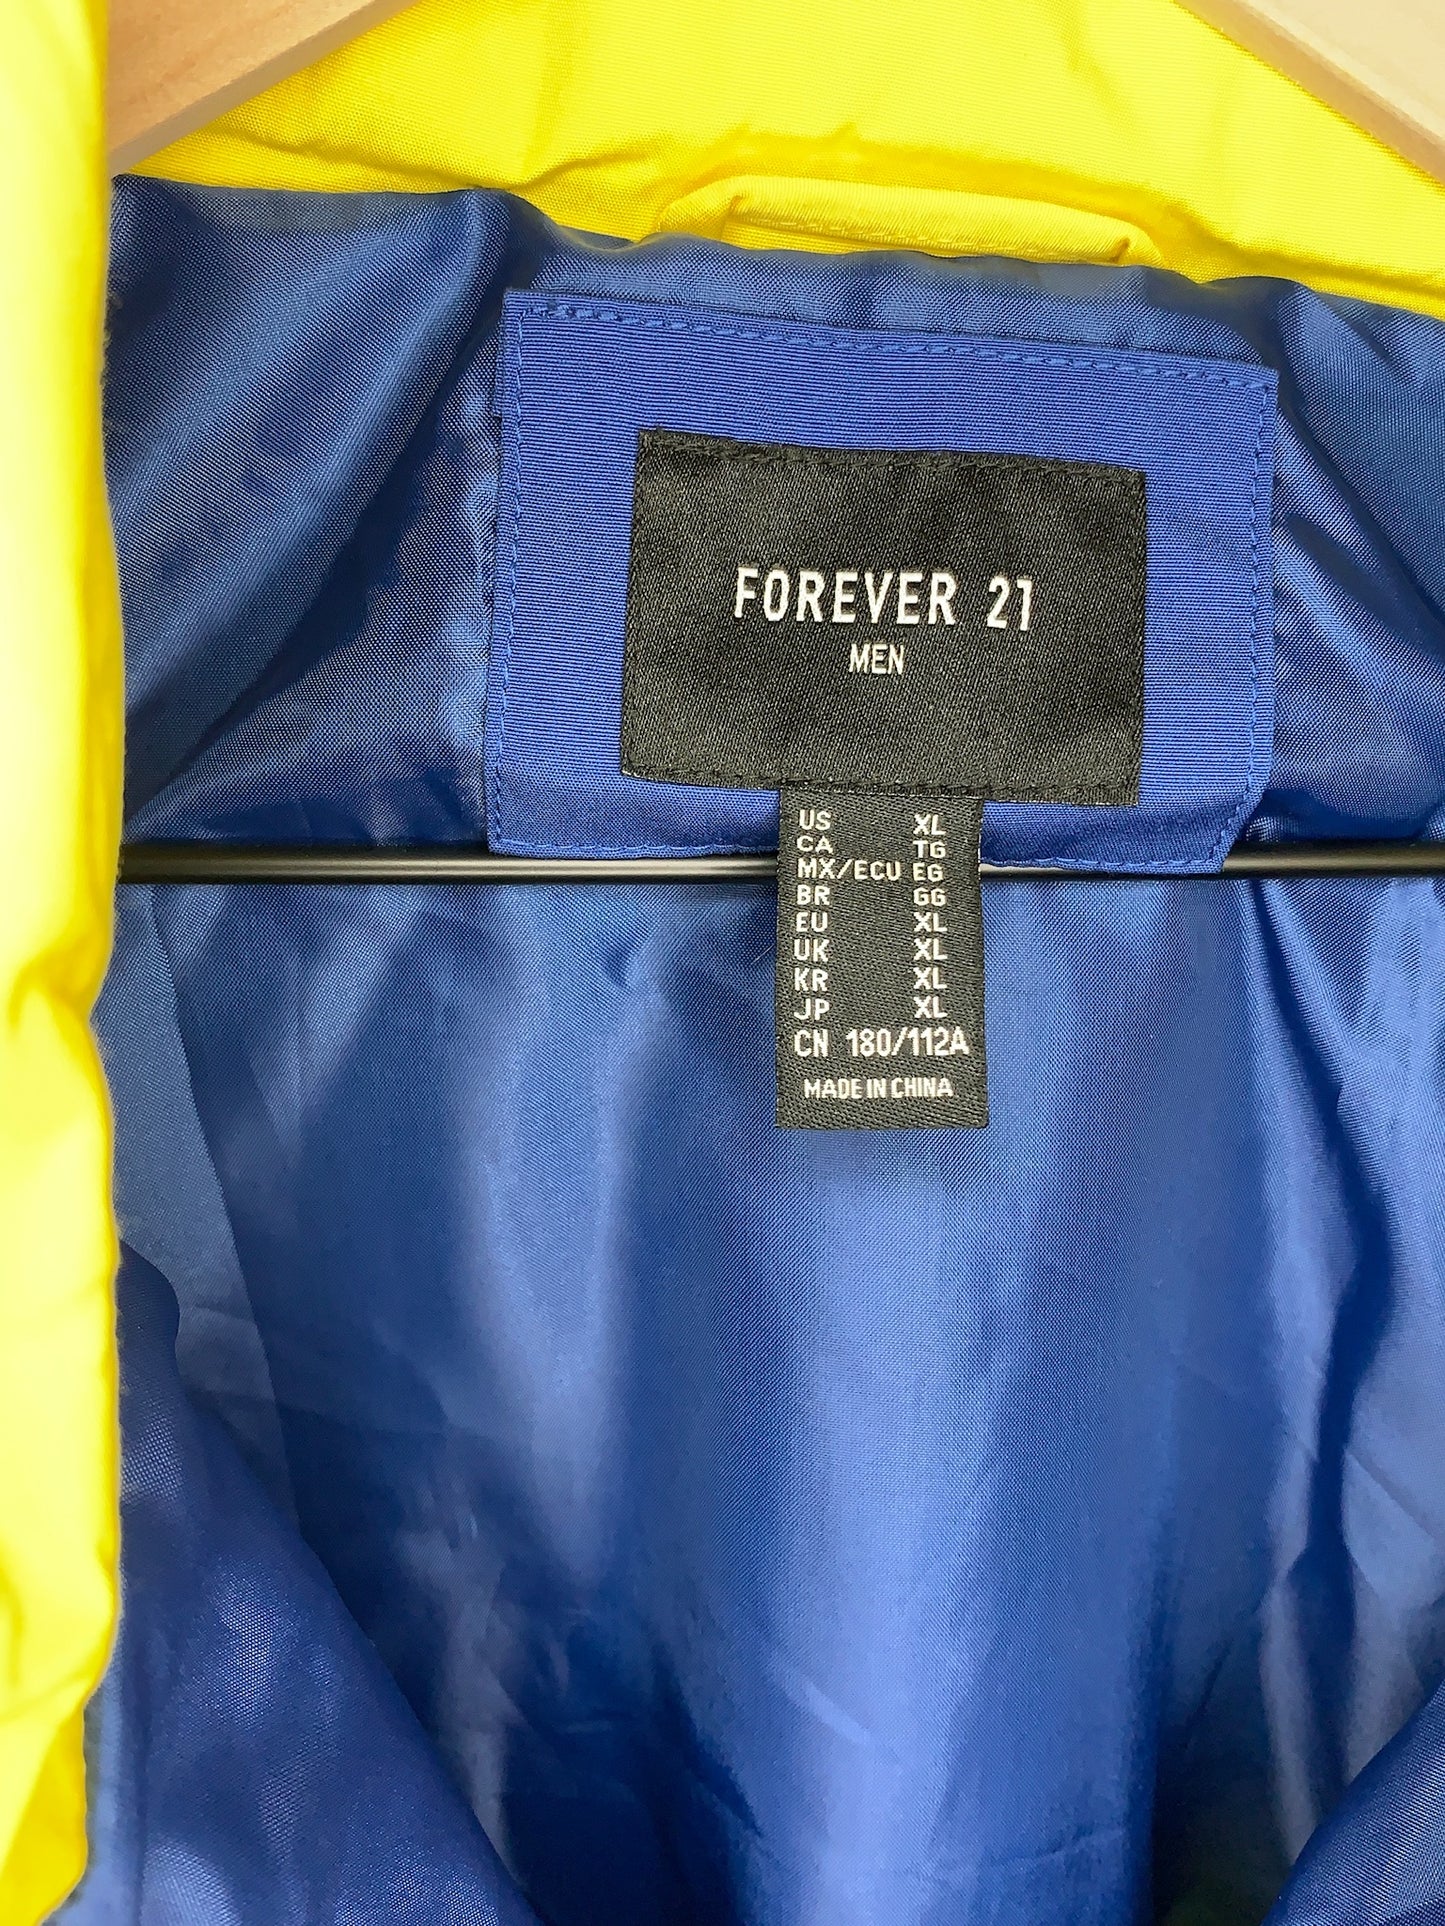 Color Block Jacket By Forever 21 Men